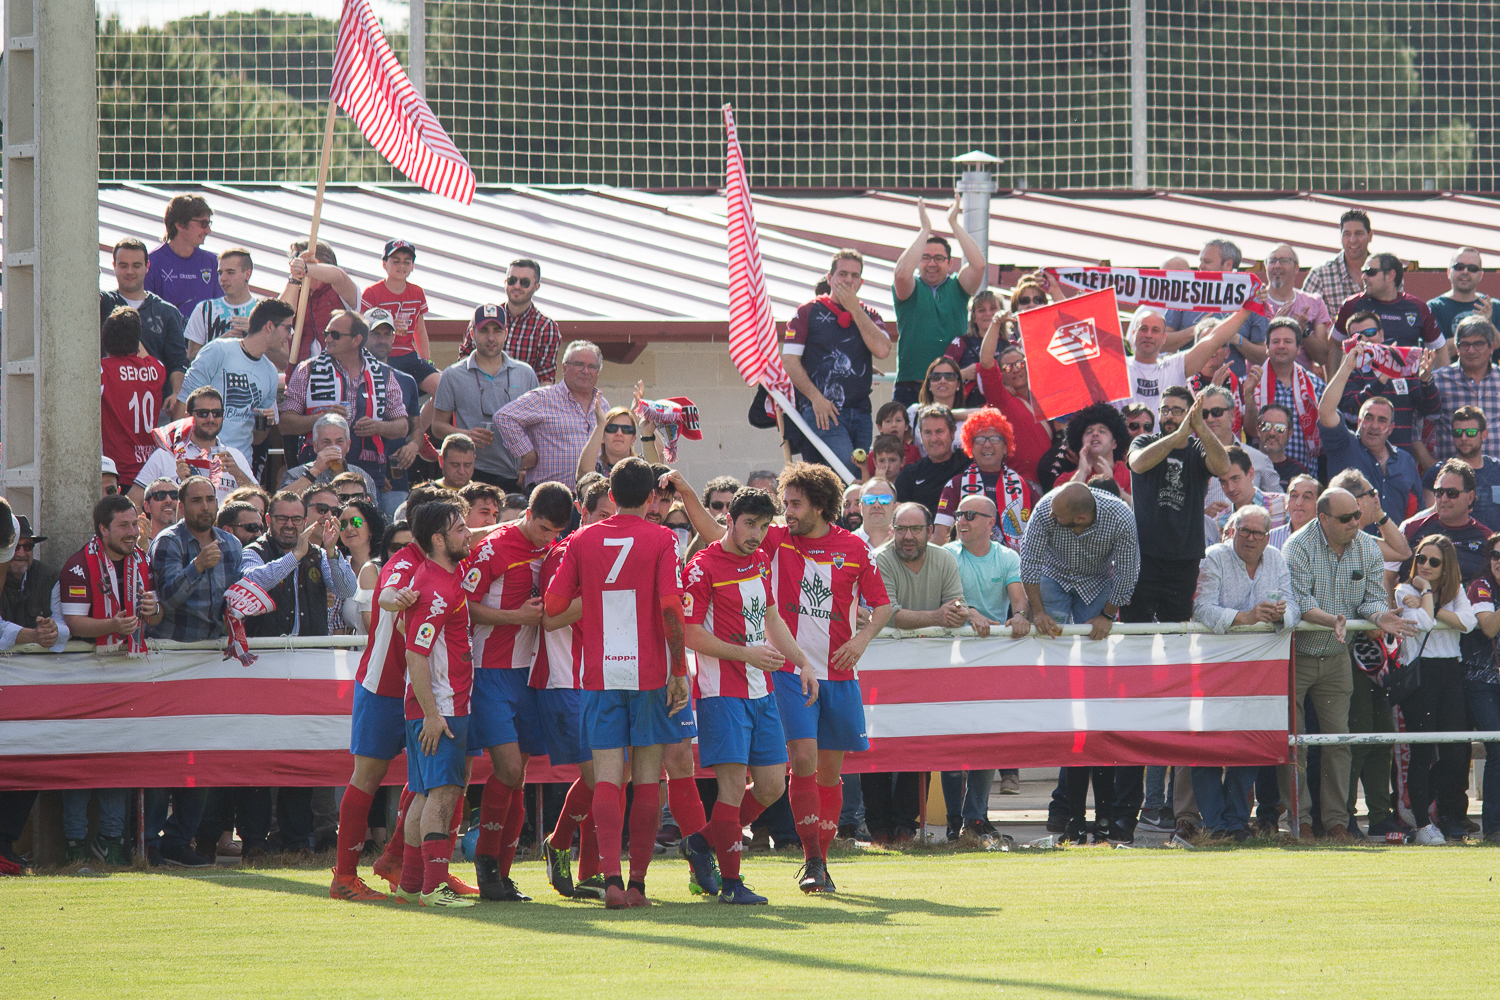 Atlético Tordesillas – La Granja: a merendar judiones